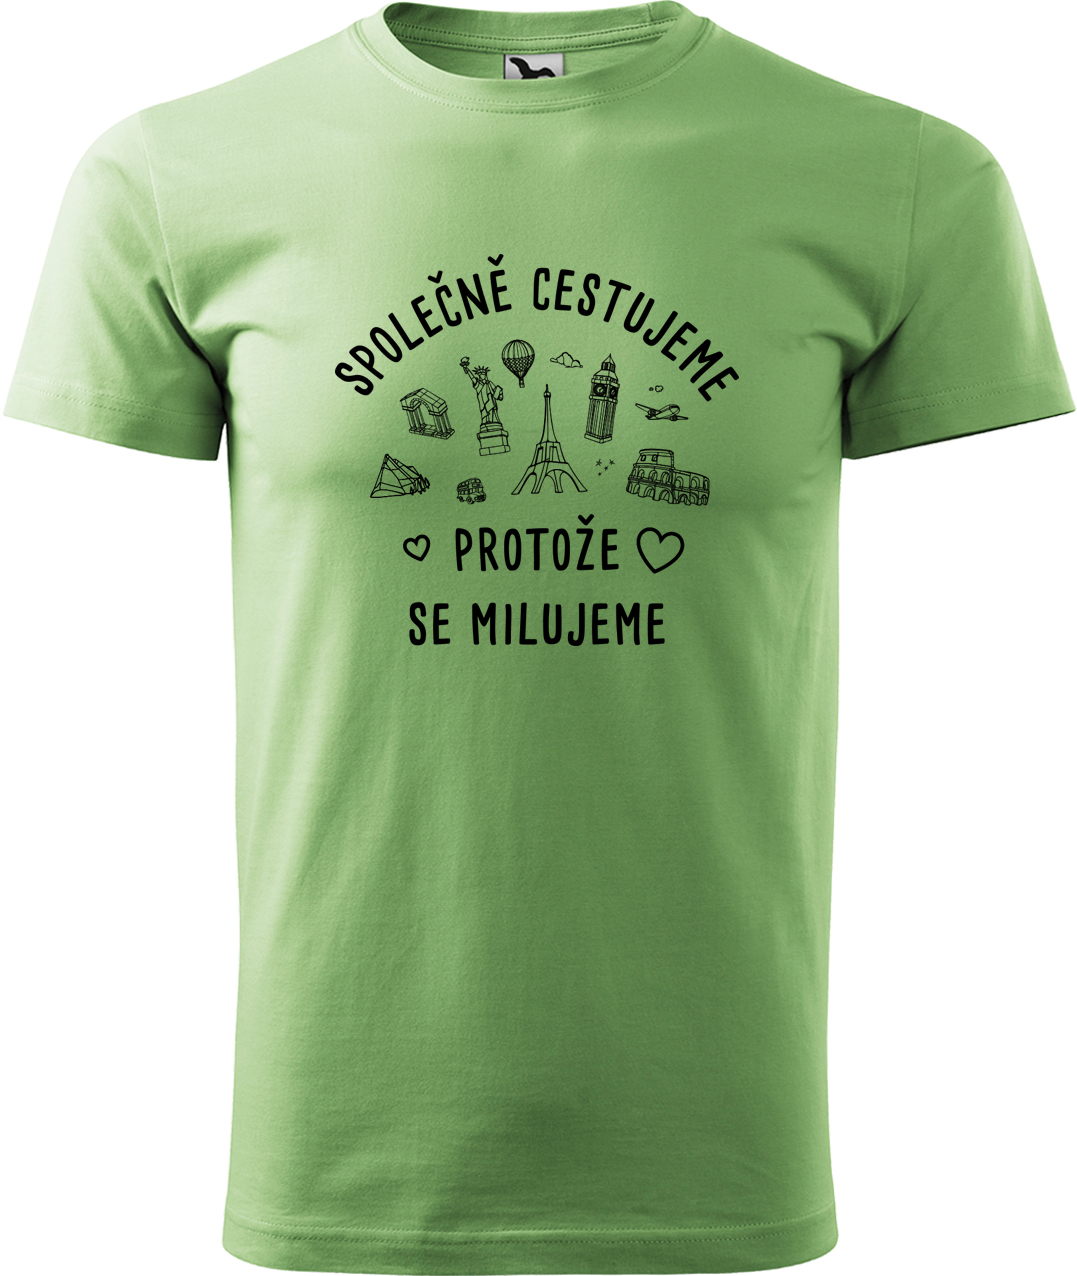 Pánské cestovatelské tričko - Společně cestujeme protože se milujeme Velikost: M, Barva: Trávově zelená (39), Střih: pánský